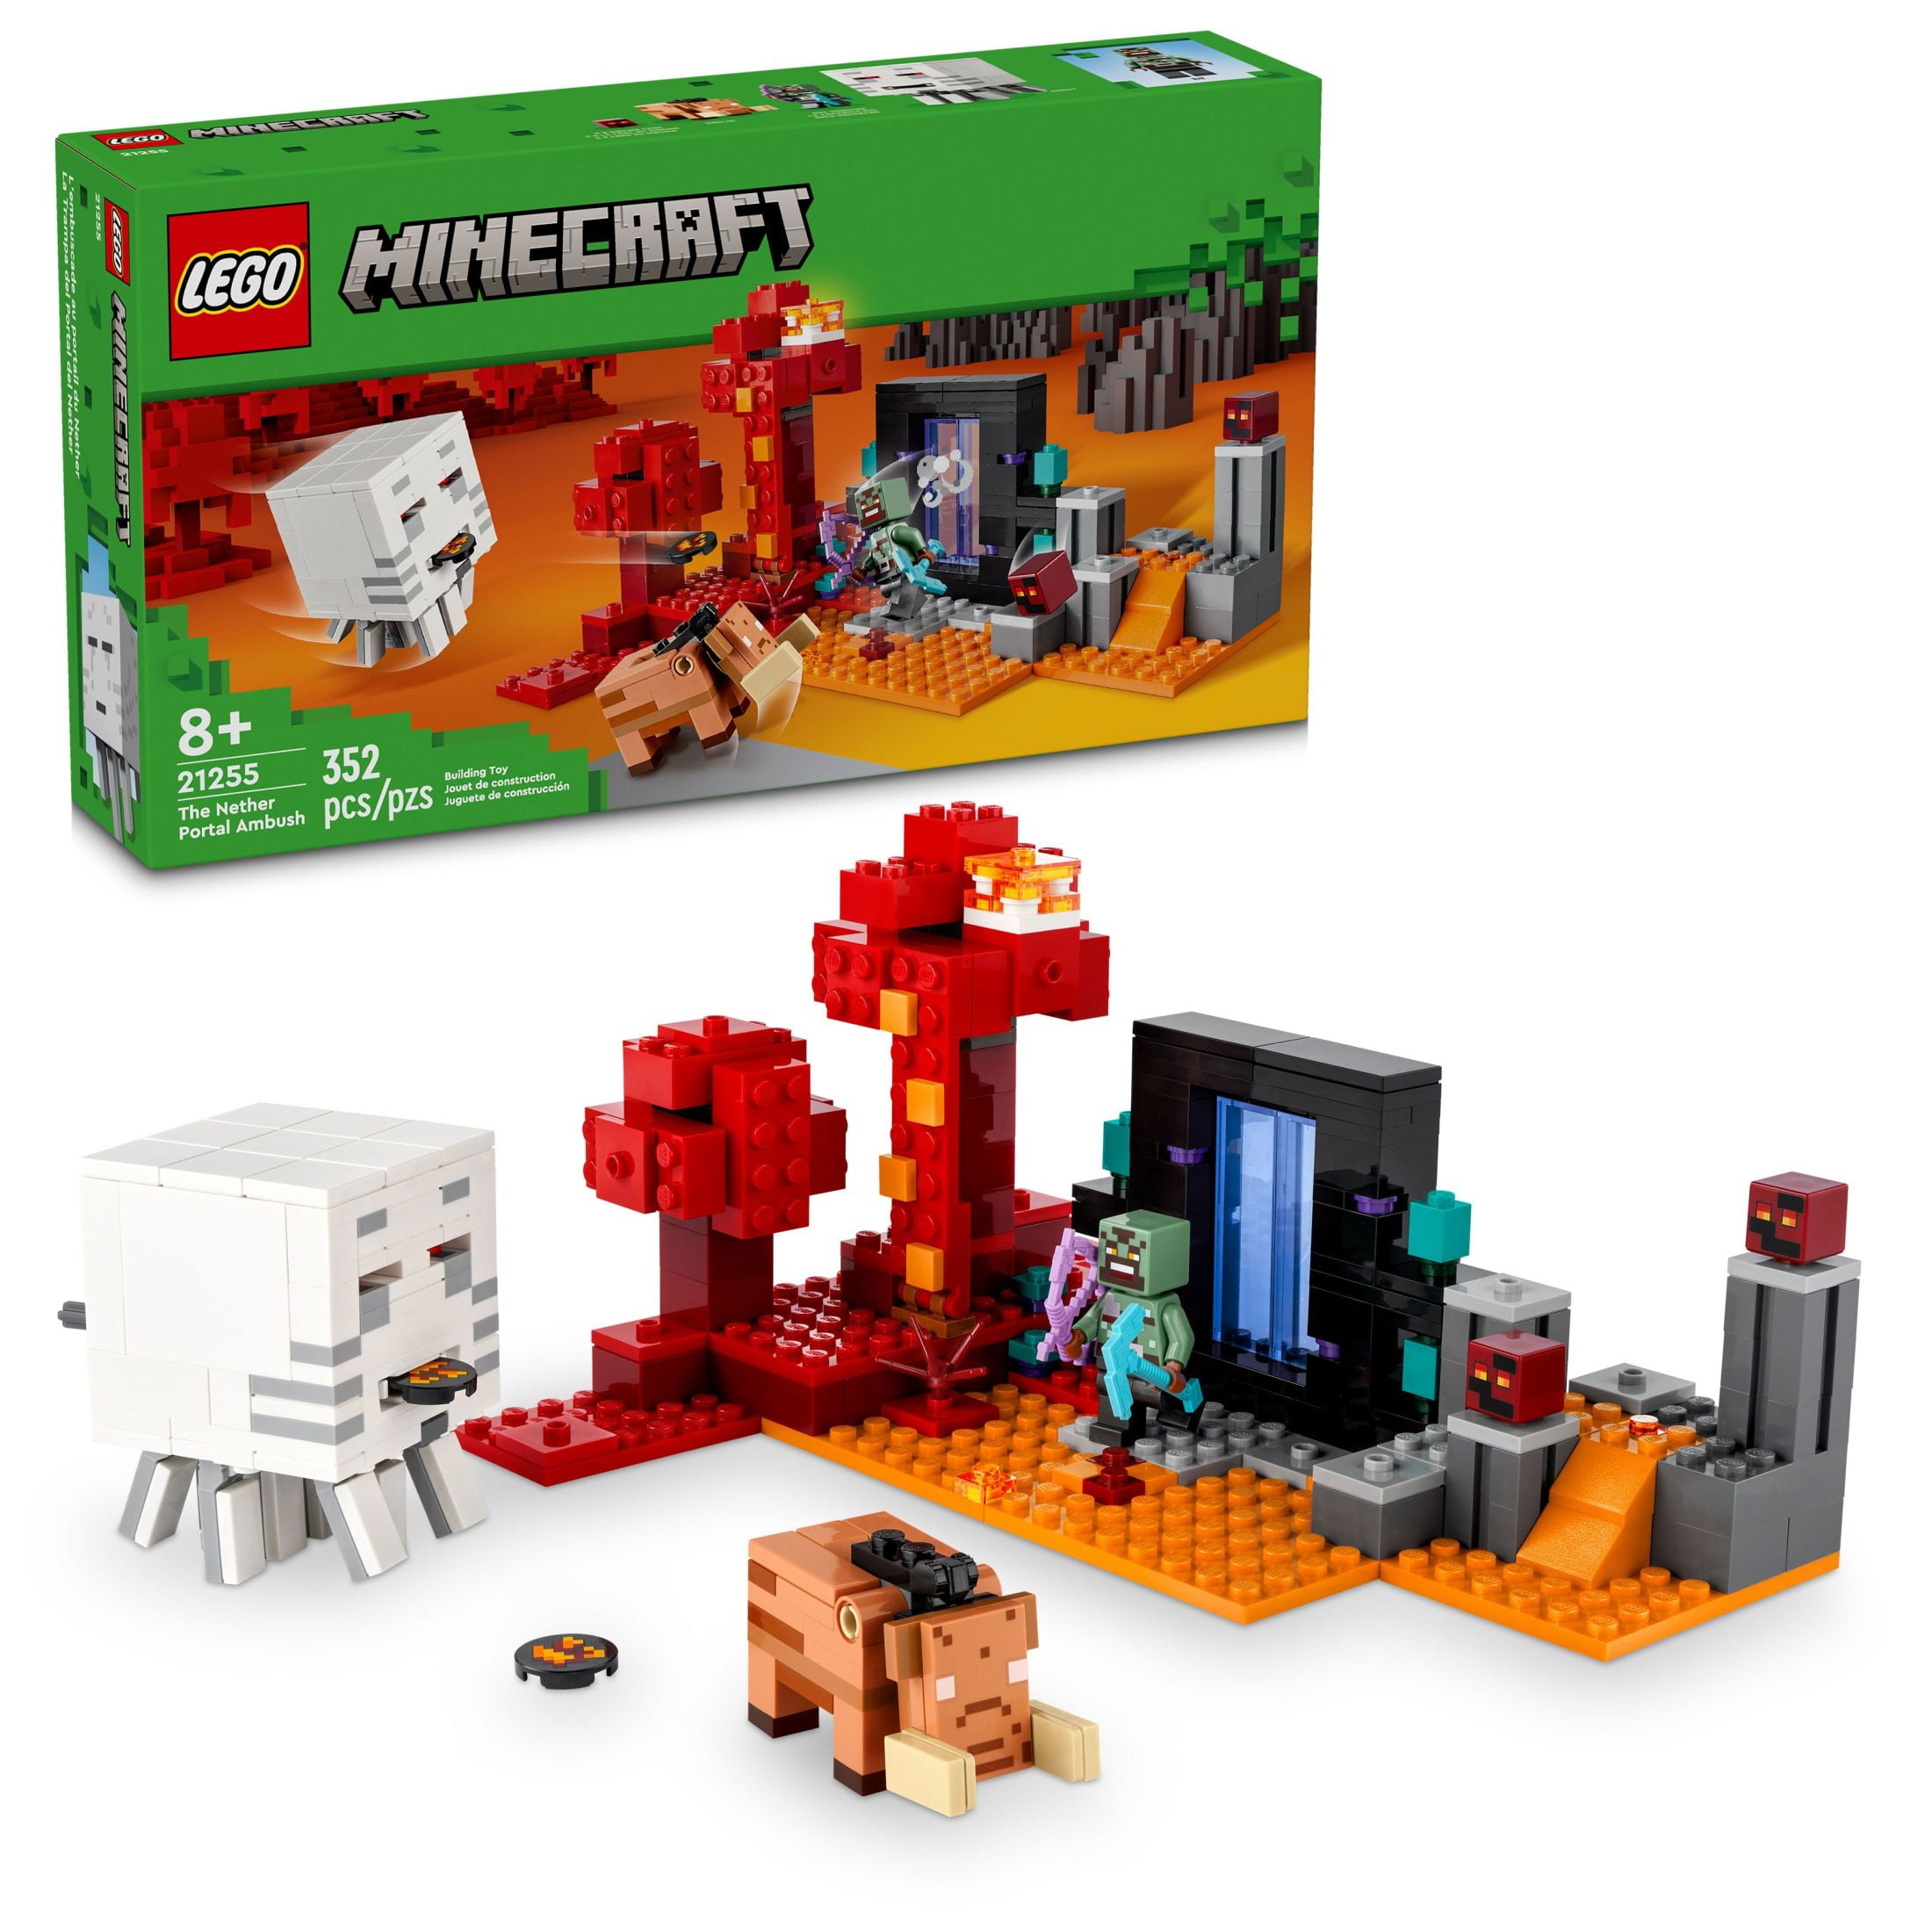 LEGO MINECRAFT 21252 L'ARMERIA CON PERSONAGGIO ALEX, ACCESSORI E ARMI  GIOCATTOLO PER BAMBINI DI 7+ ANNI E FAN DEL VIDEOGIOCO - Toys Center